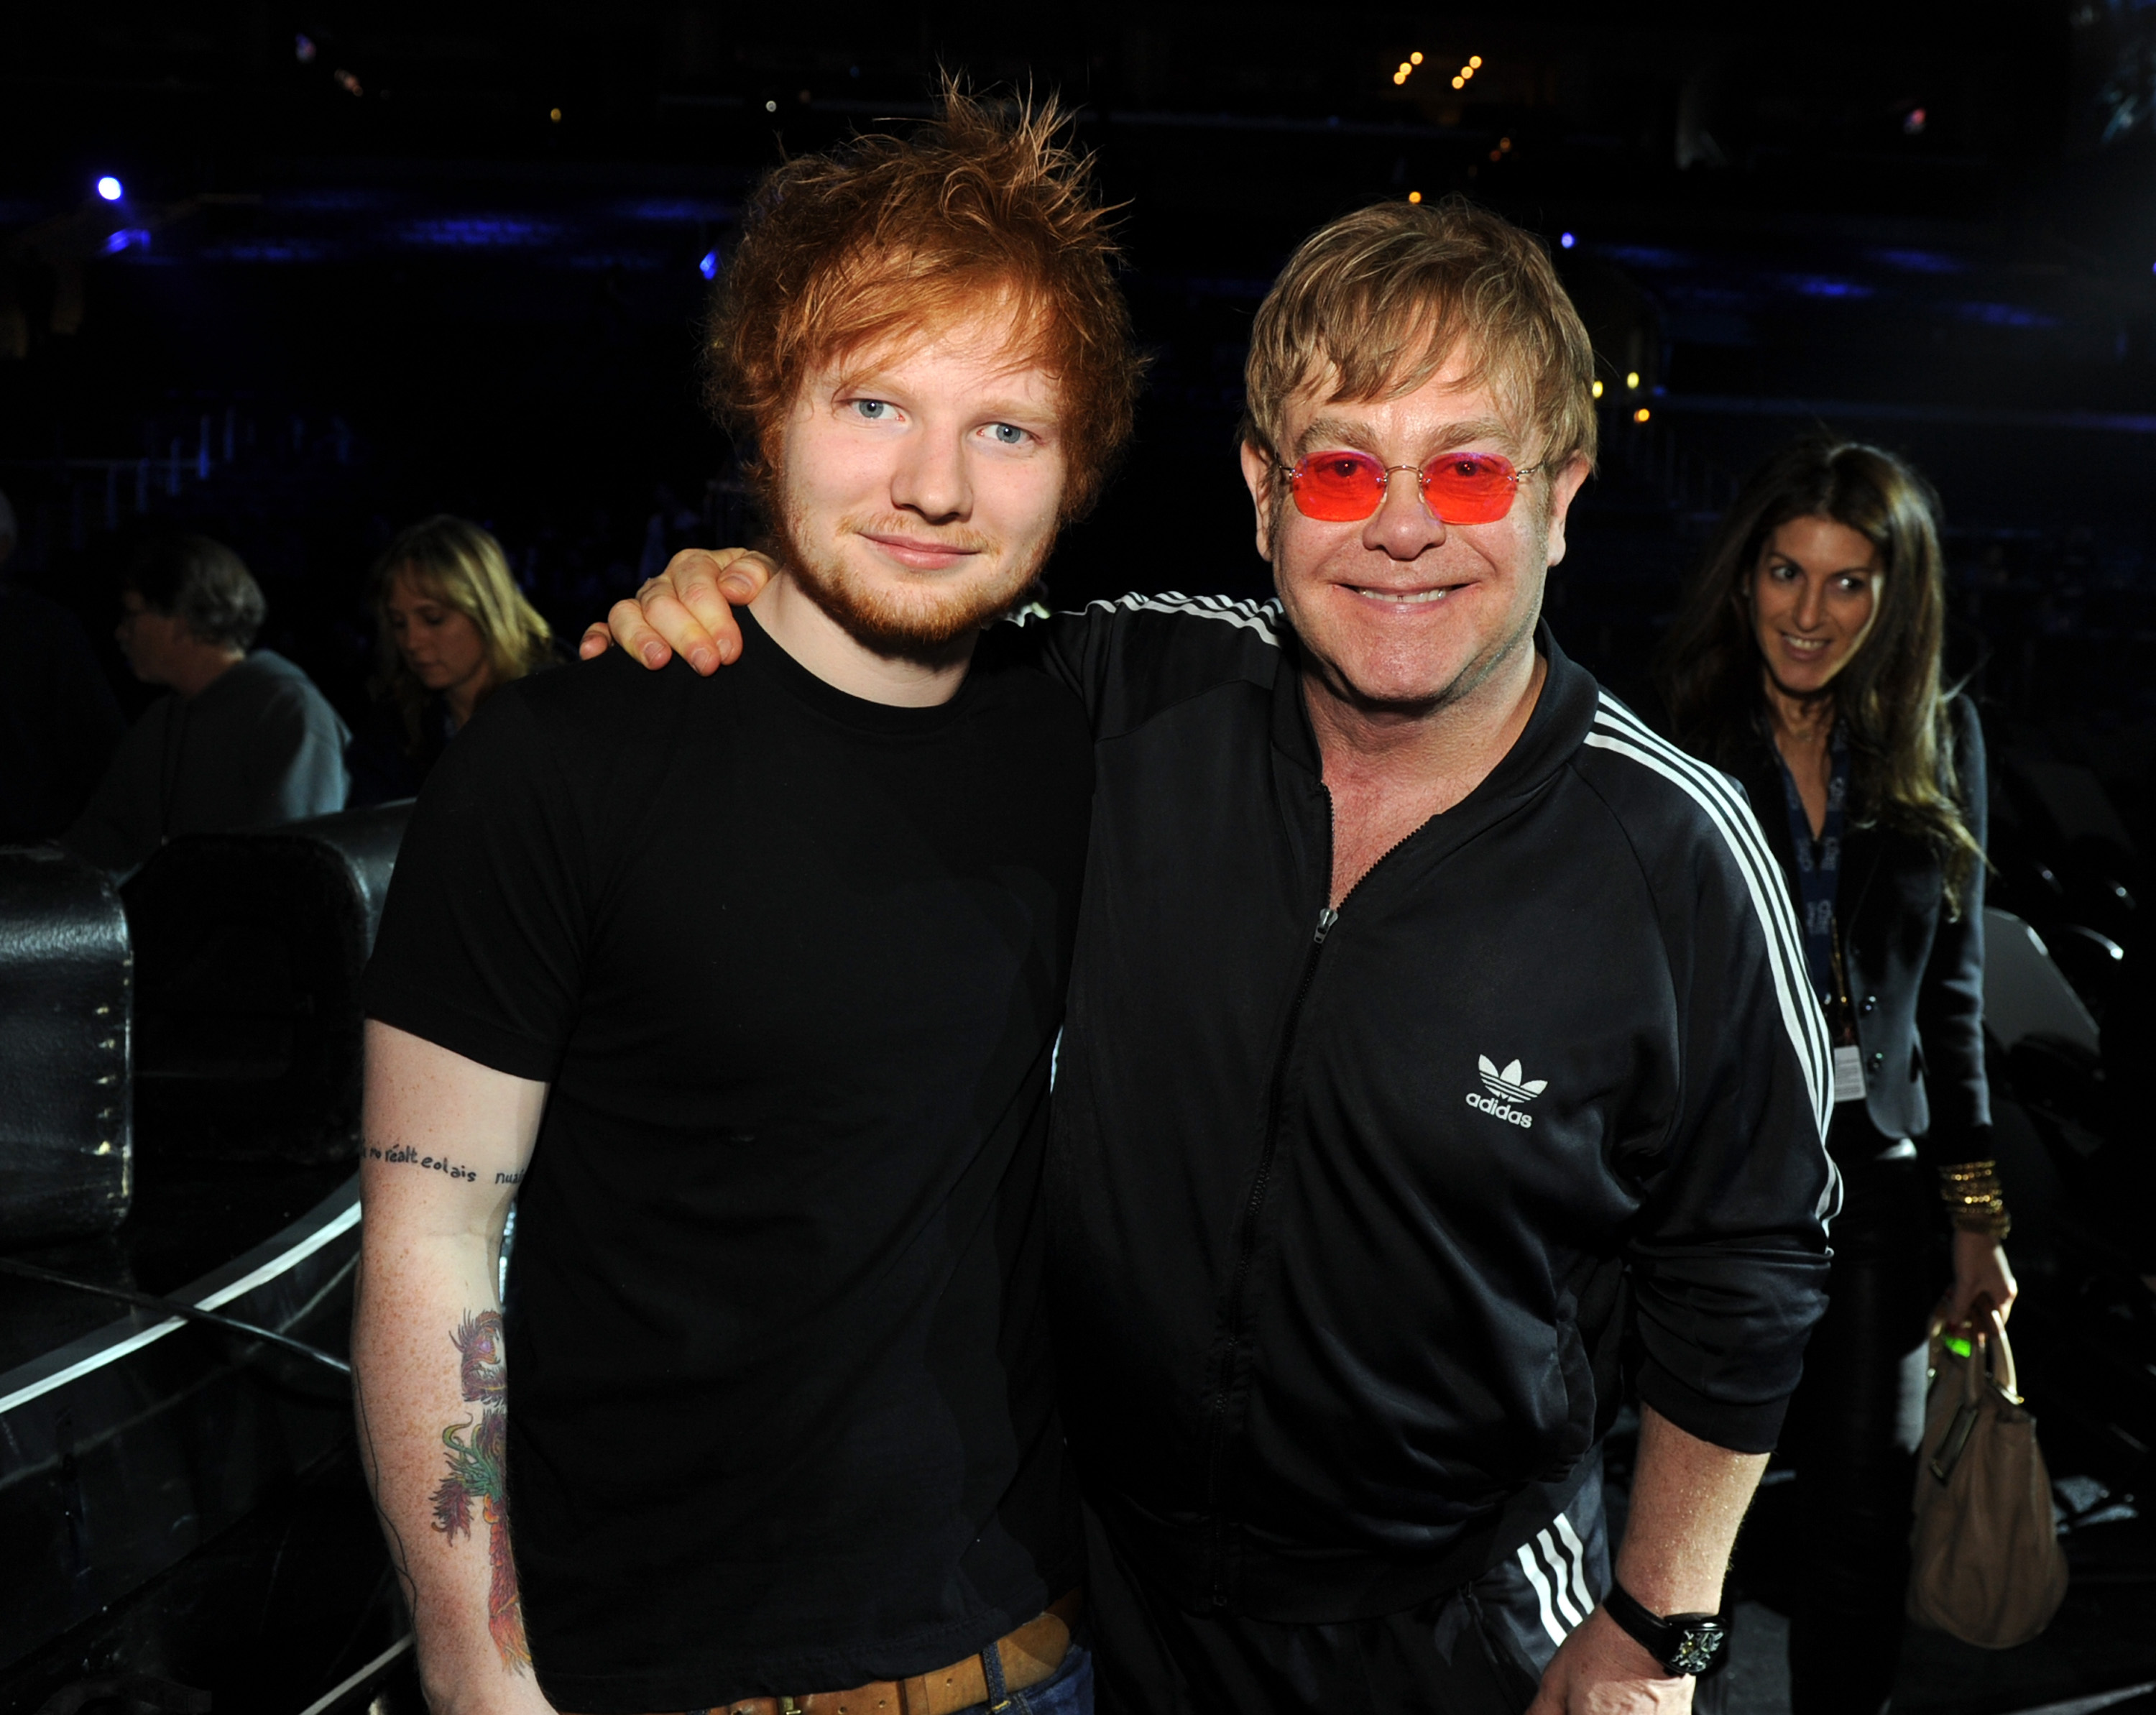 Elton John putting his arm around Ed Sheeran